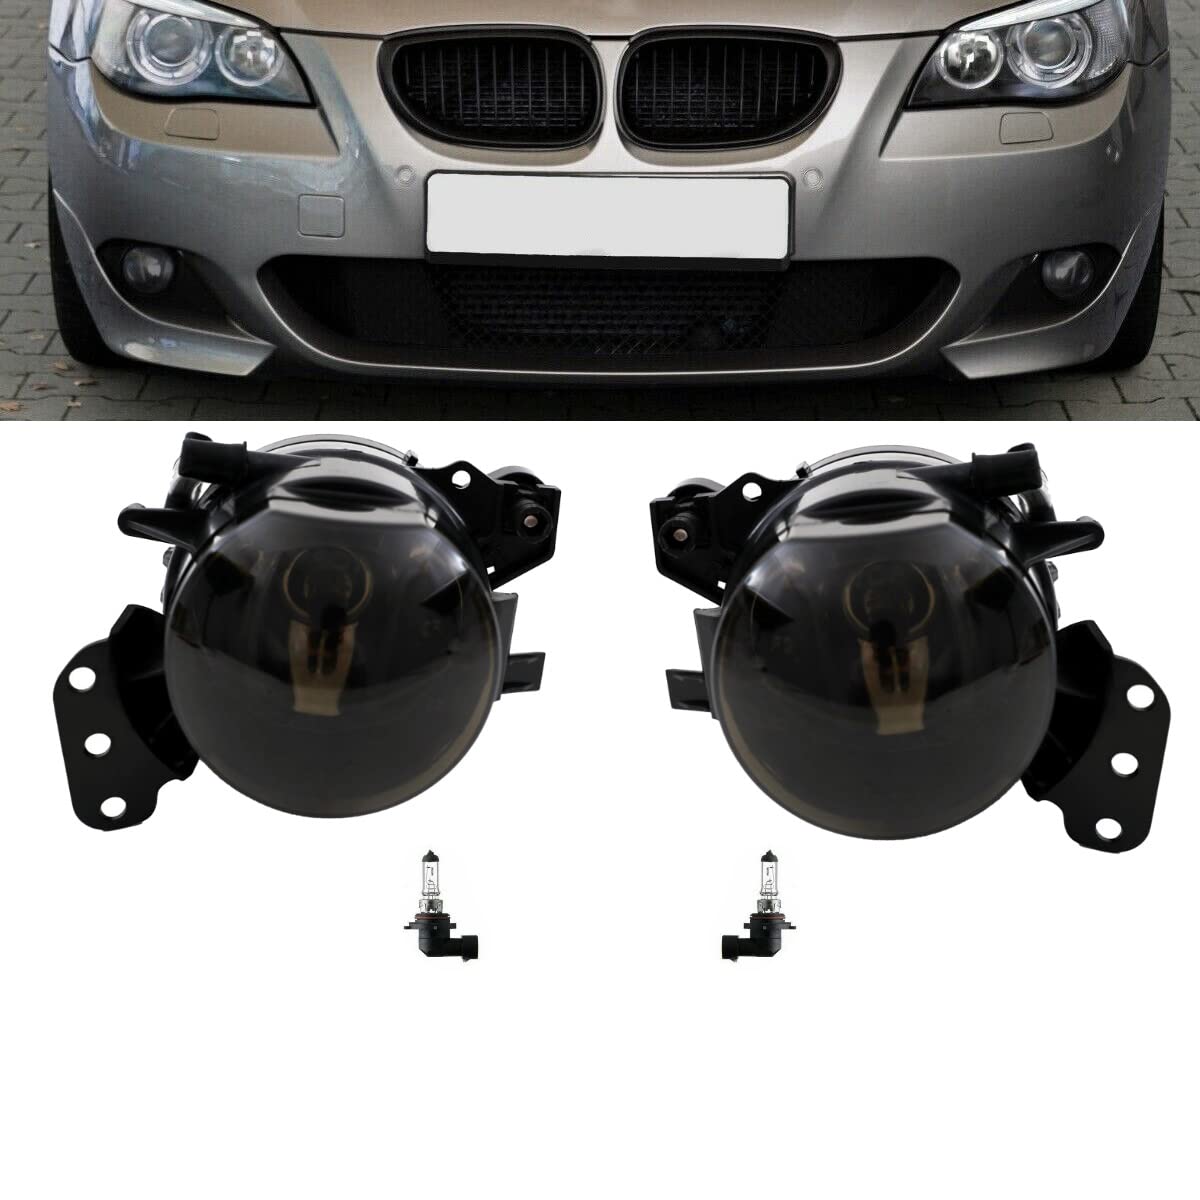 DM Autoteile 14235 HB4 Nebelscheinwerfer Set Klarglas Smoke Schwarz kompatibel für BMW 5er E60 E61 M Paket von DM Autoteile